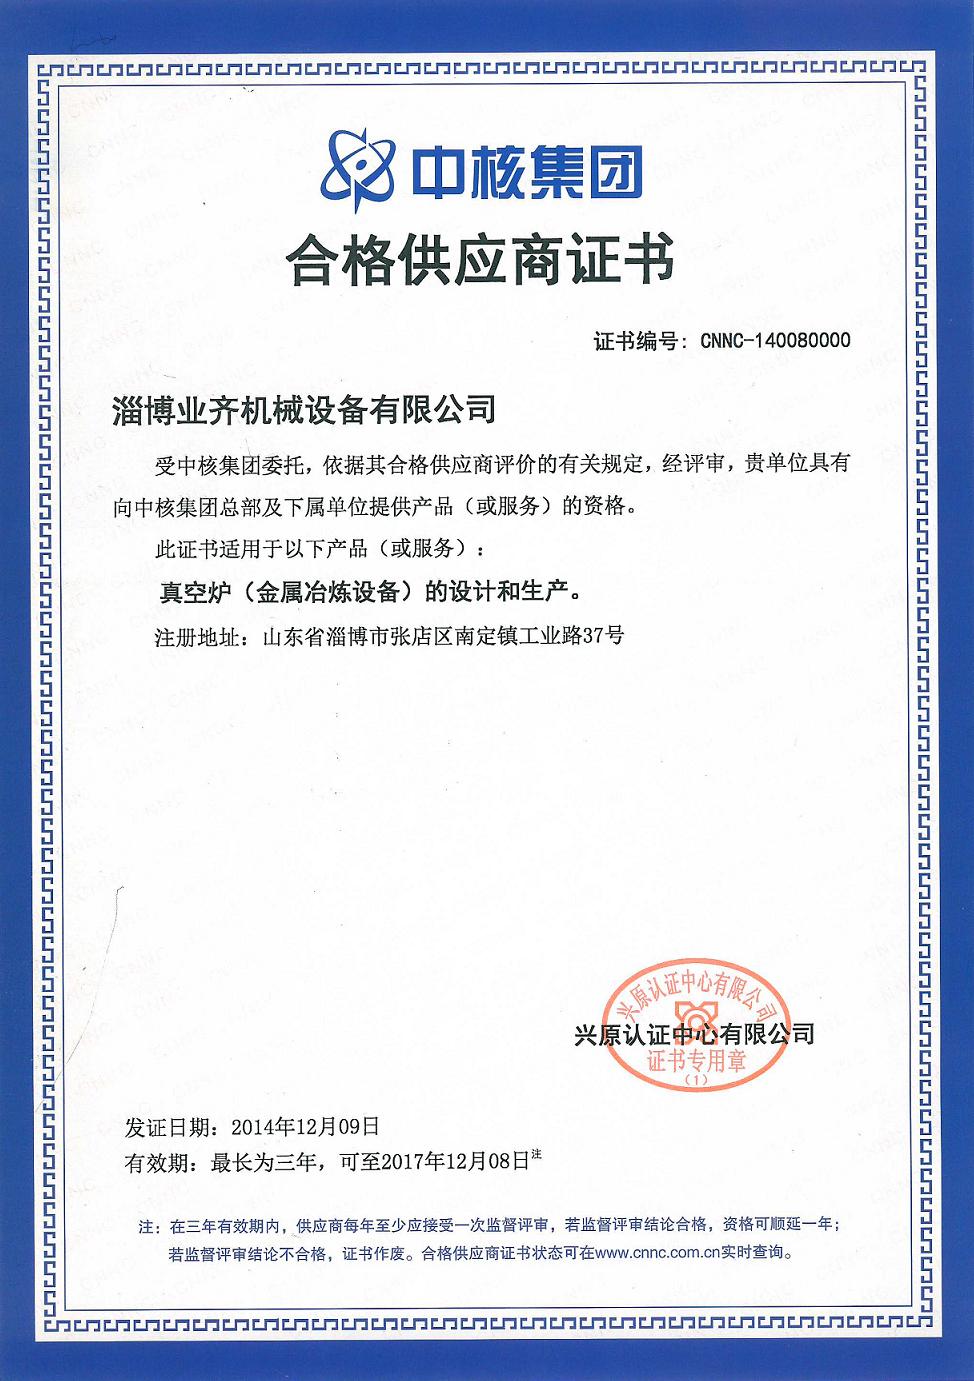 中国核工业集团合格供应商证书